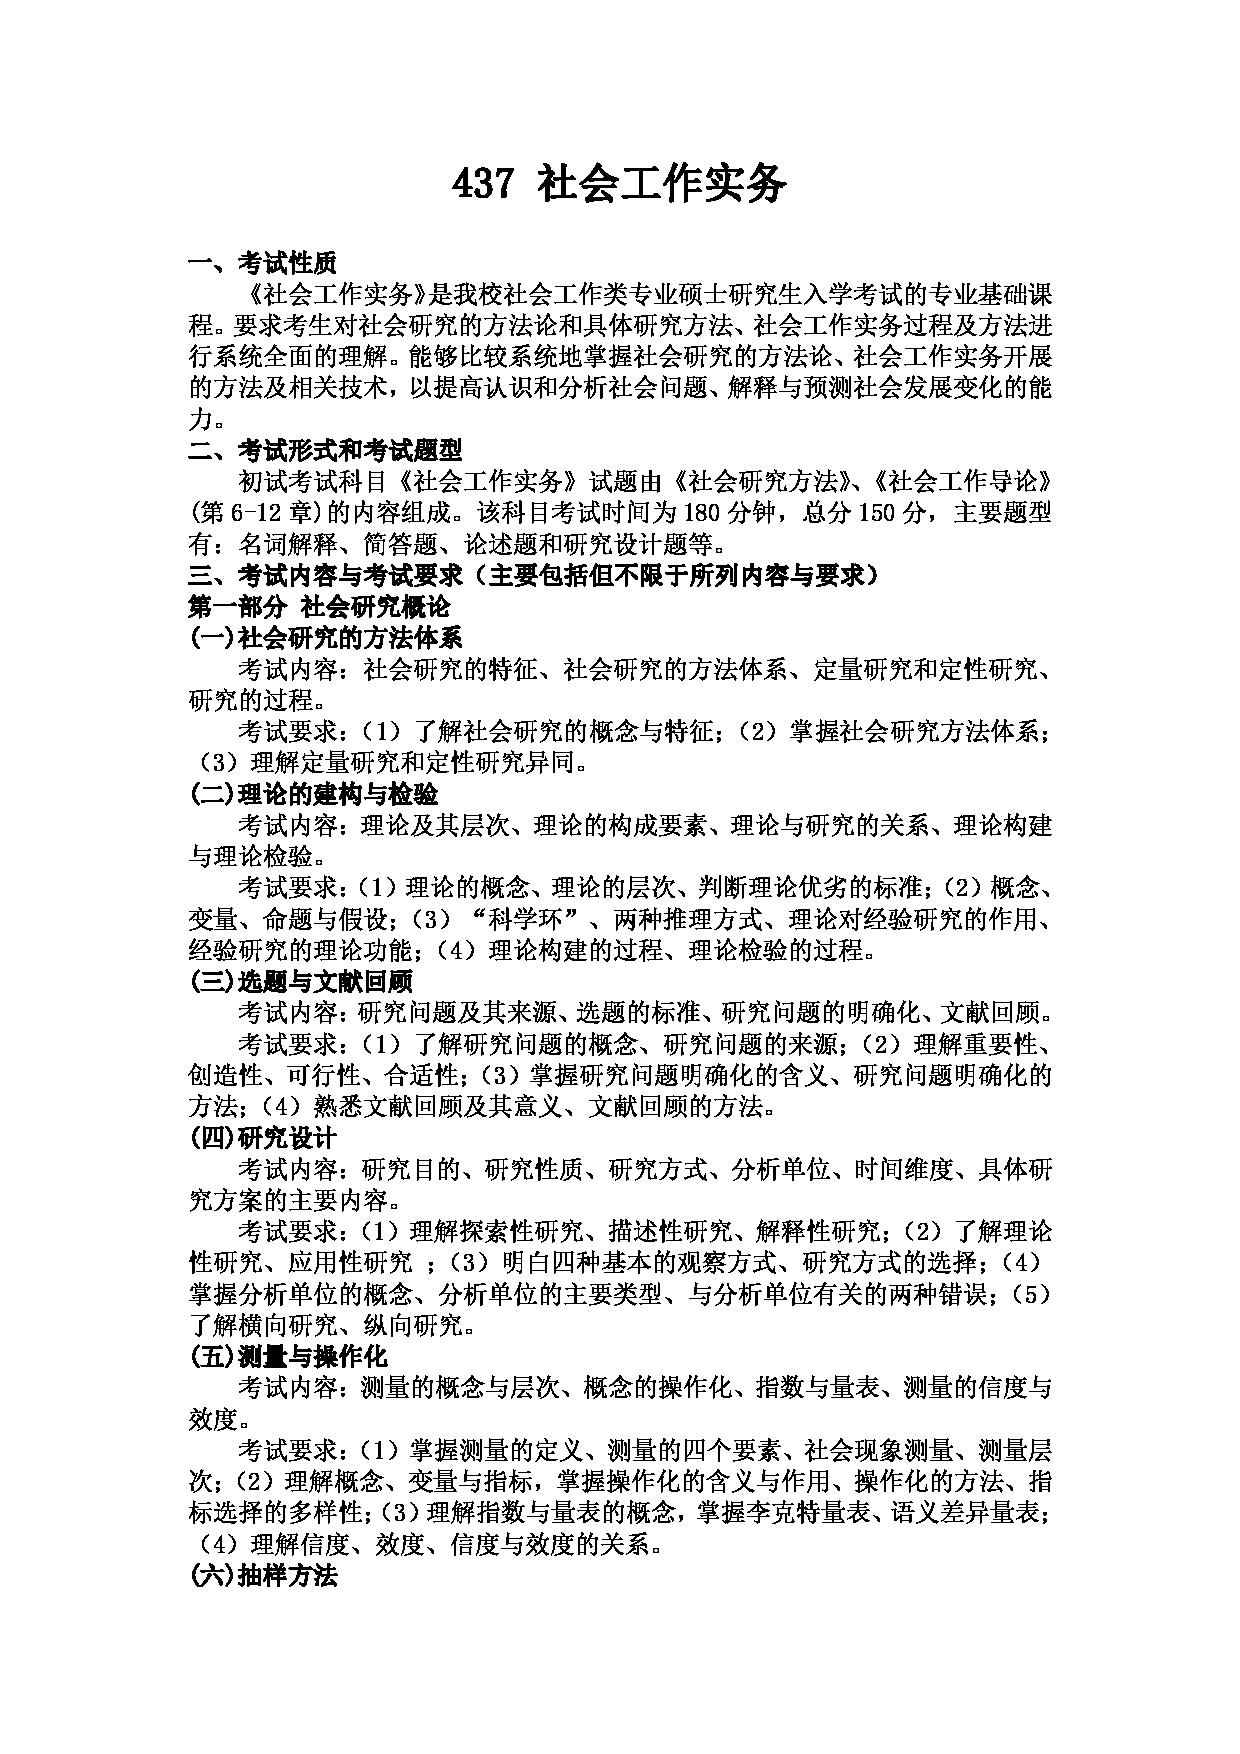 2023考研大纲：武汉科技大学2023年考研科目 437 社会工作实务 考试大纲第1页